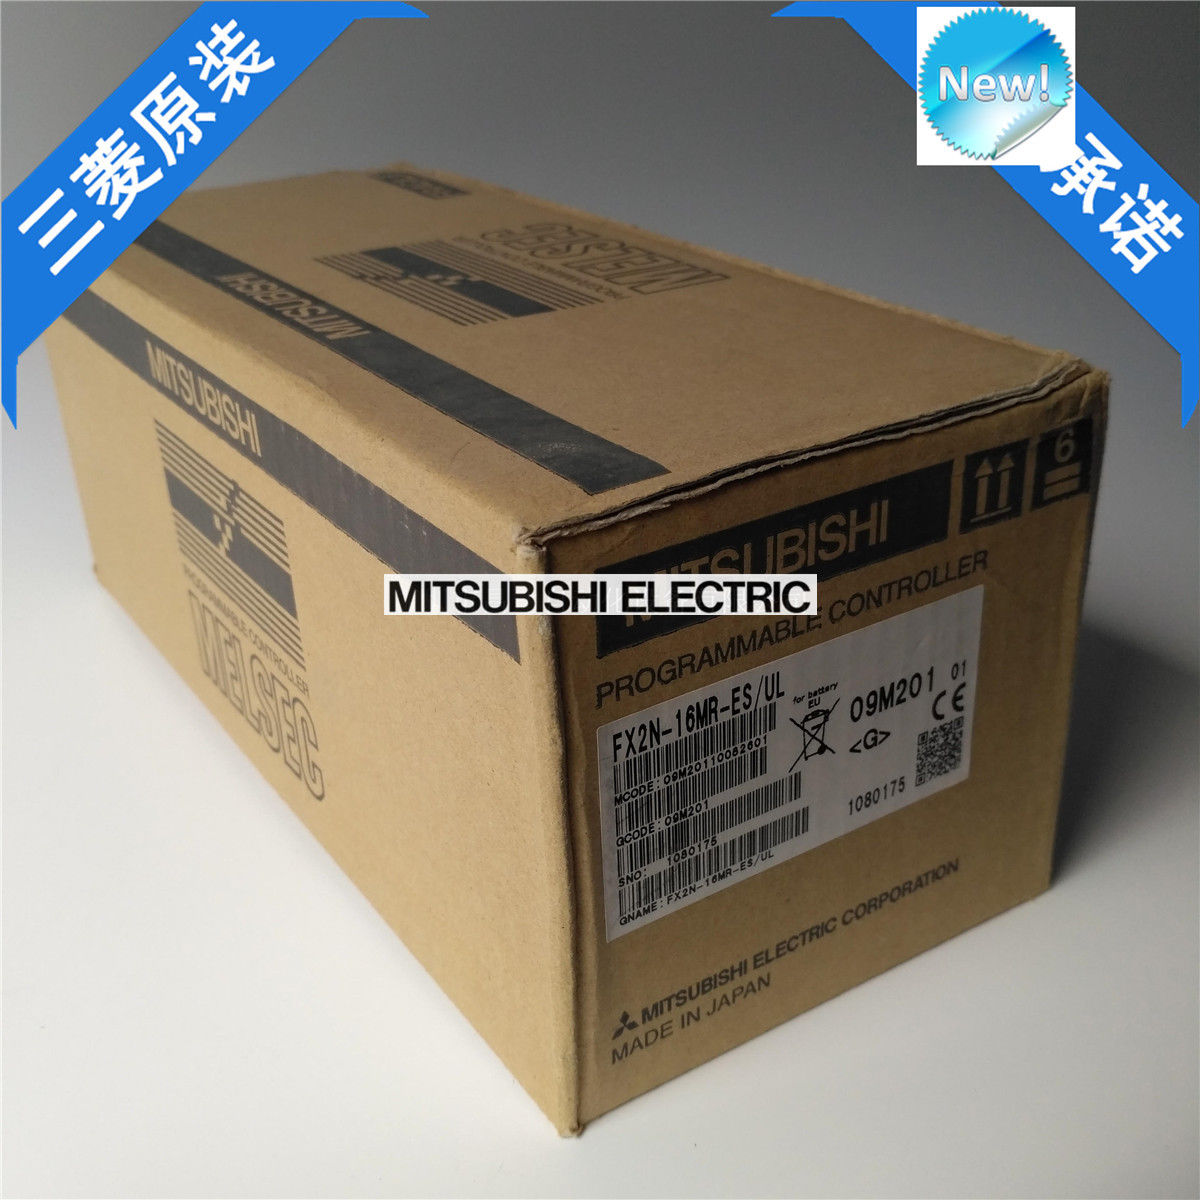 Mitsubishi PLC FX2N-16MR-ES/UL New In Box FX2N16MRESUL